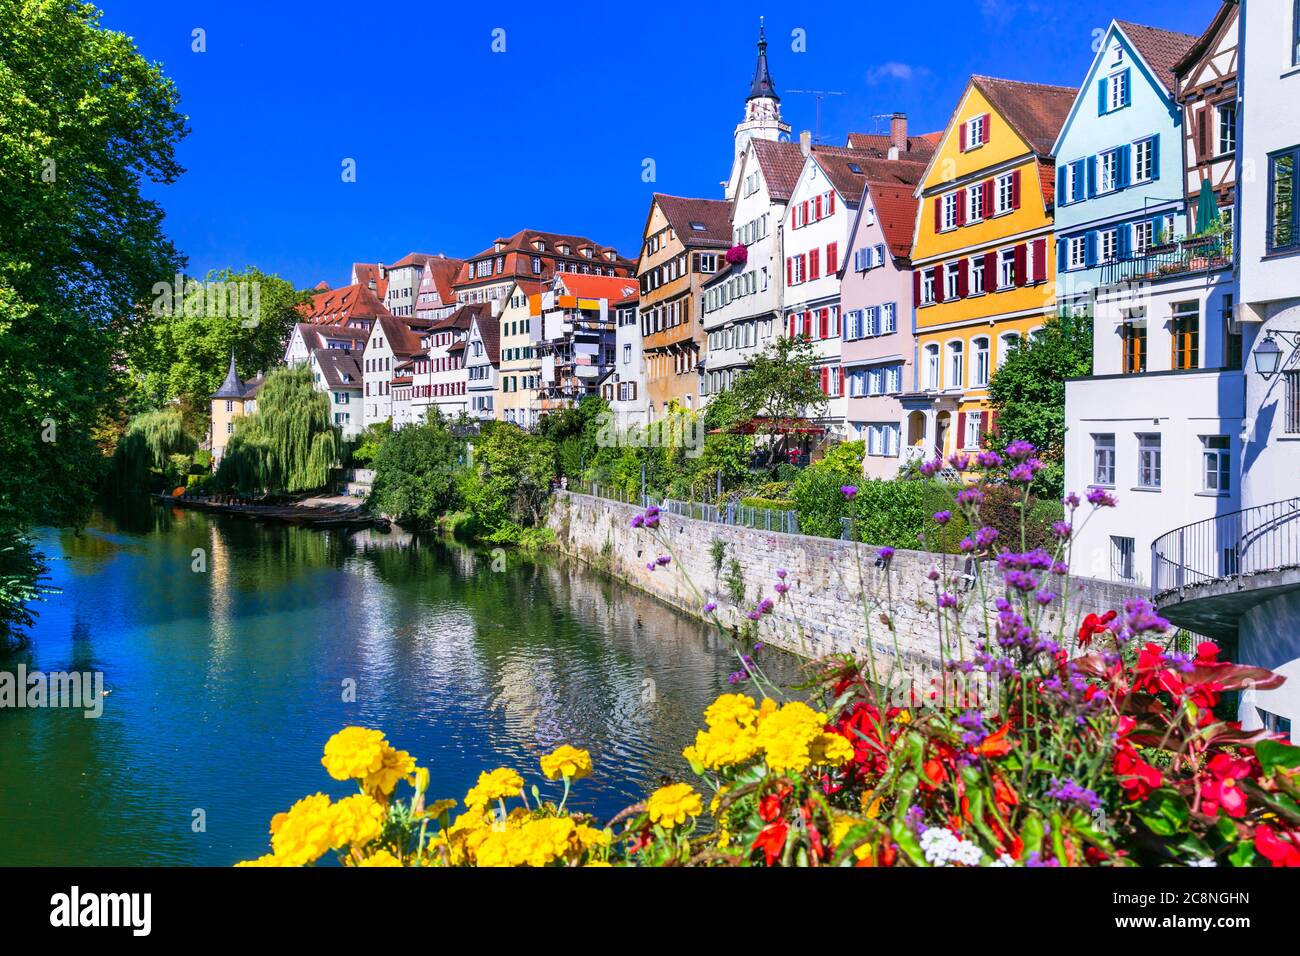 Die buntesten Städte - traditionelle Stadt Tübingen, die von Blumen geschmückt ist. Deutschland Stockfoto